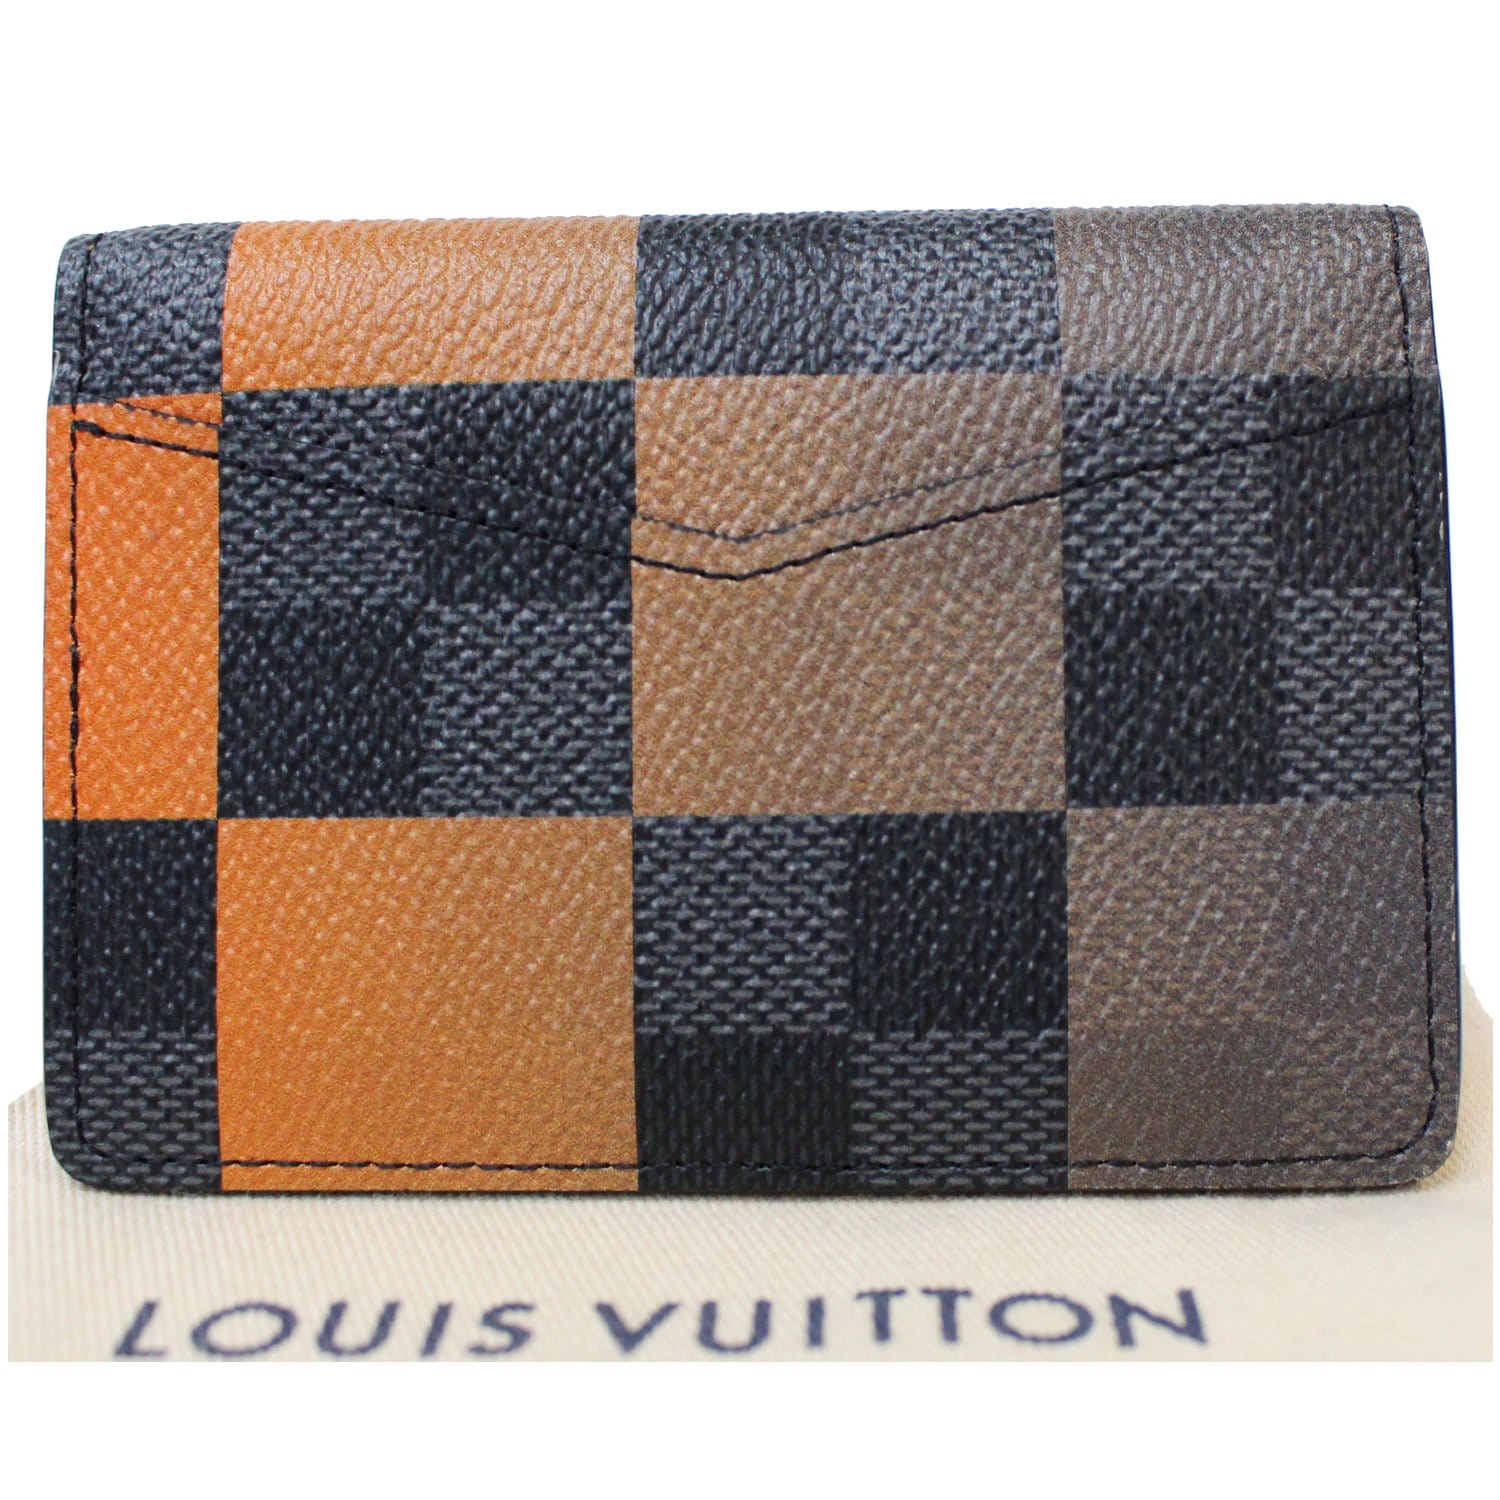 Louis Vuitton Damier Graphite N64021 Smart Wallet (DS7137) - The Attic Place